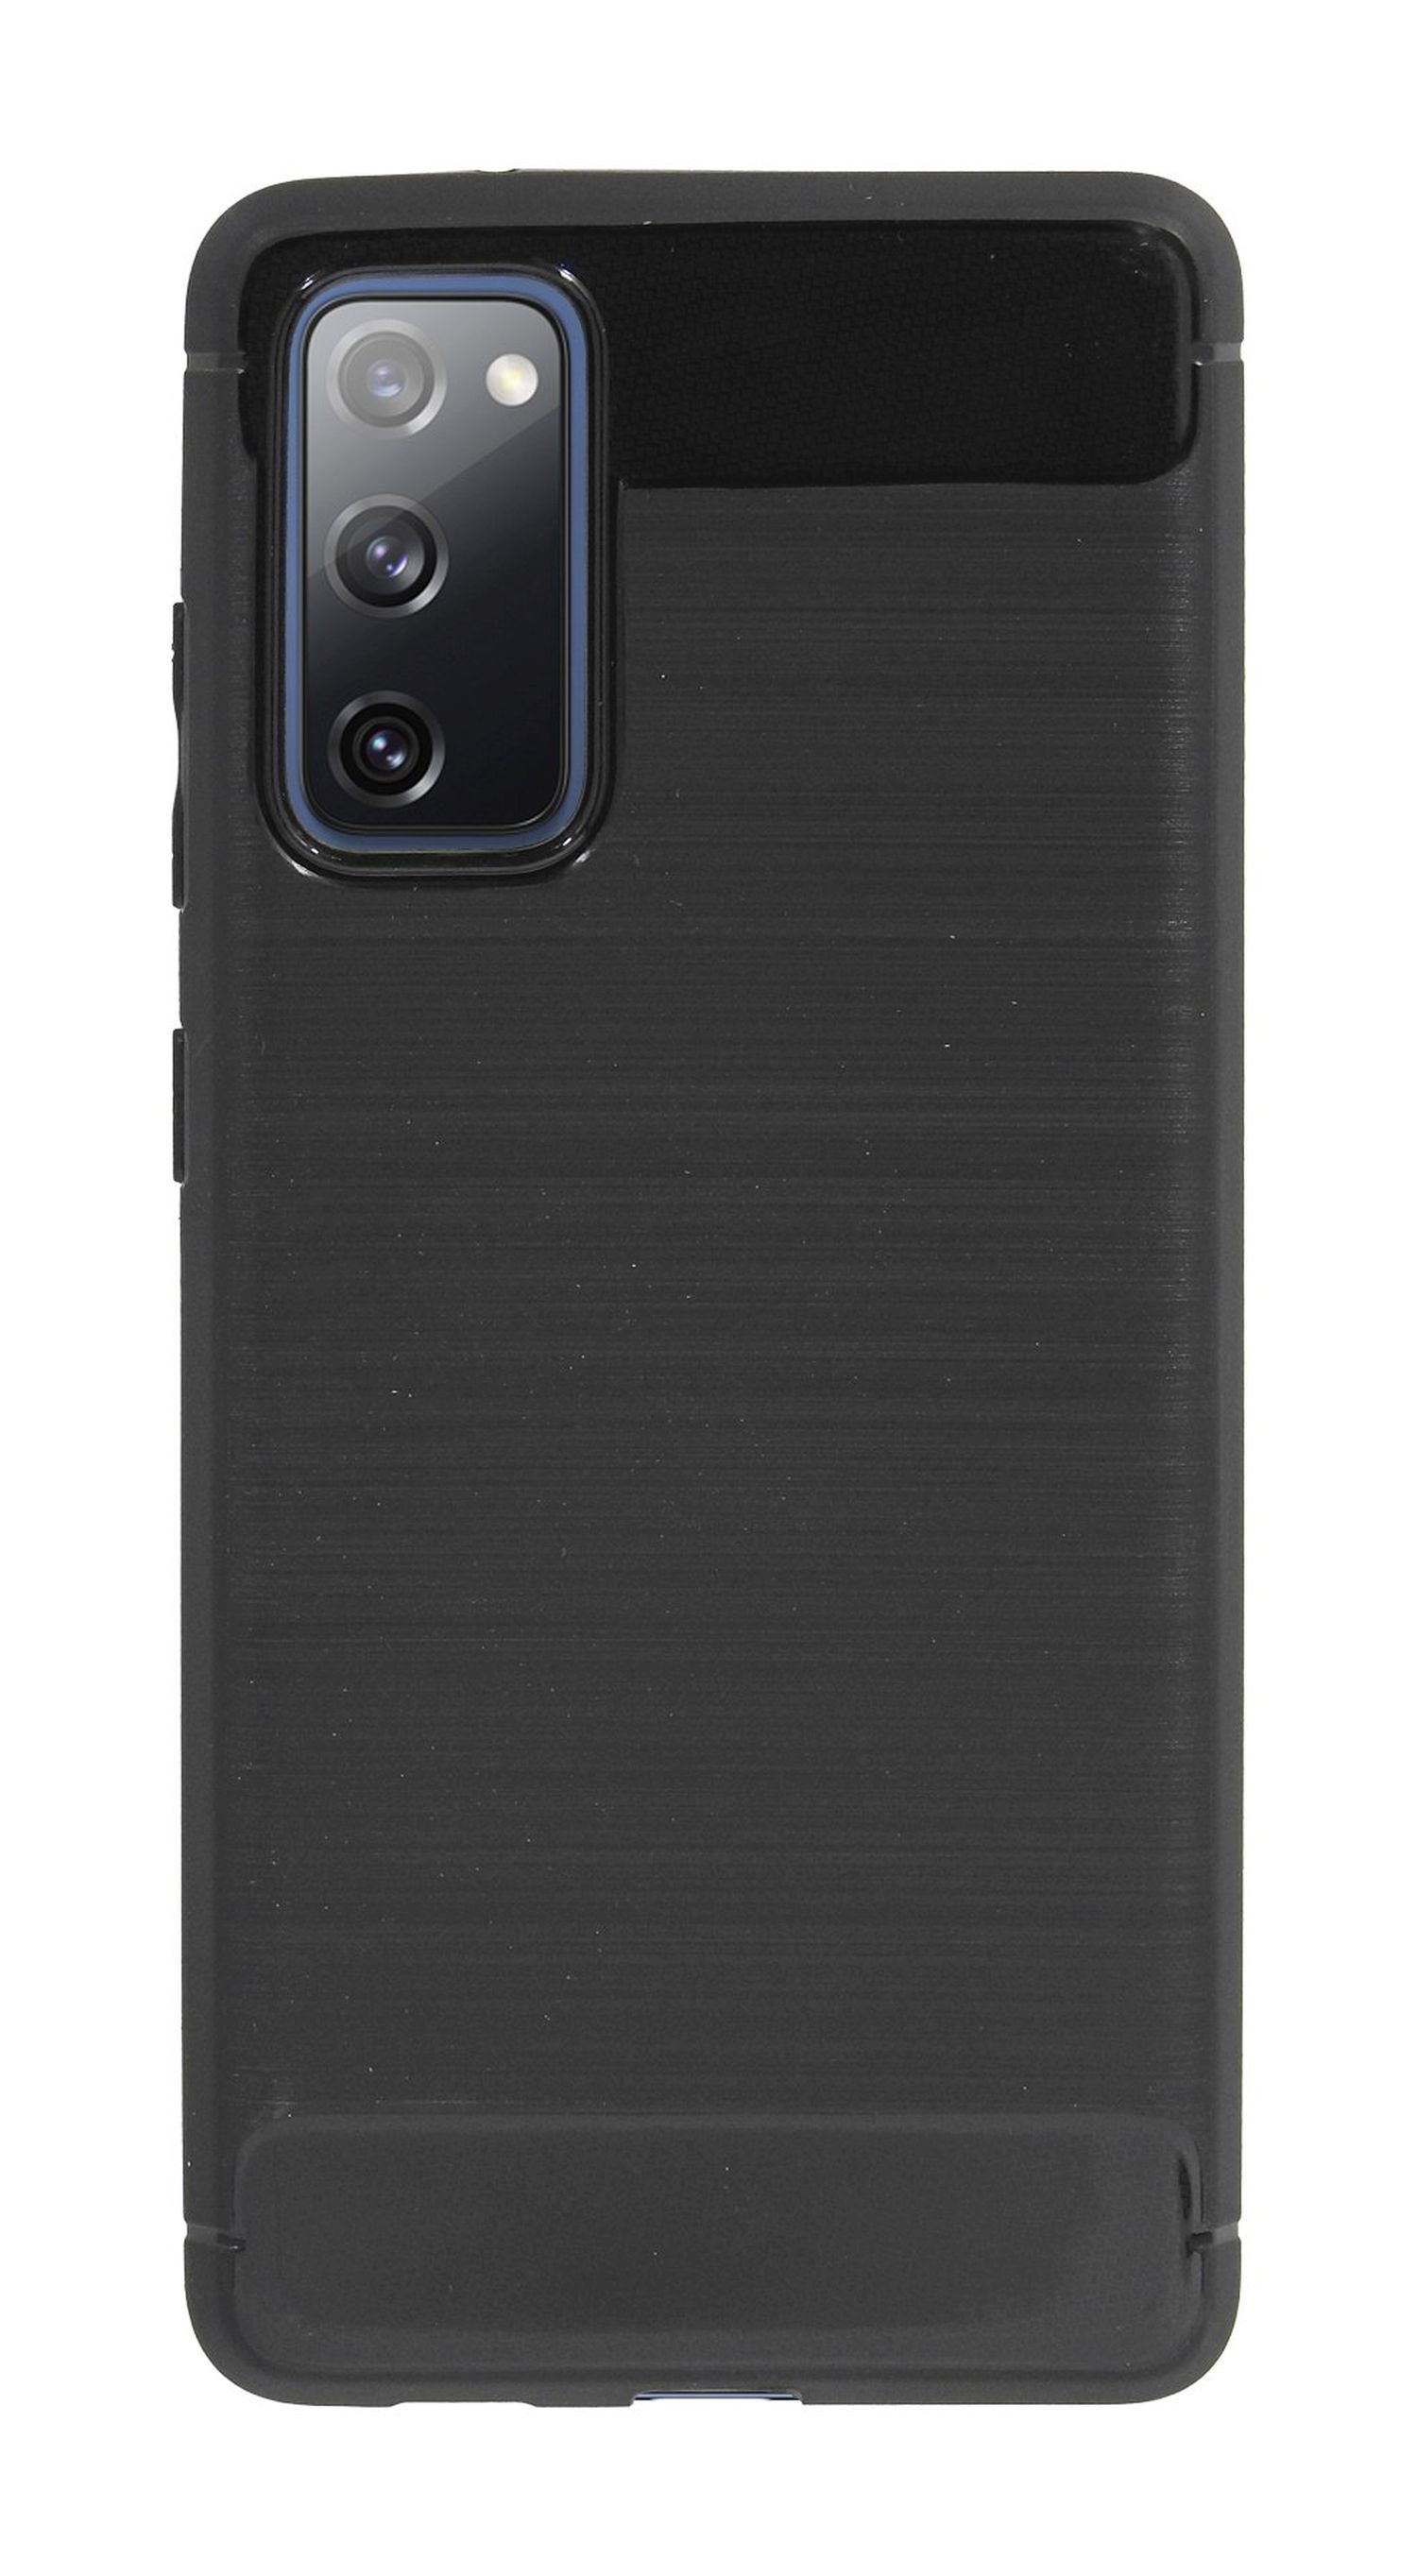 Schwarz COFI Samsung, Carbon-Look FE, Bumper, Case, S20 Galaxy